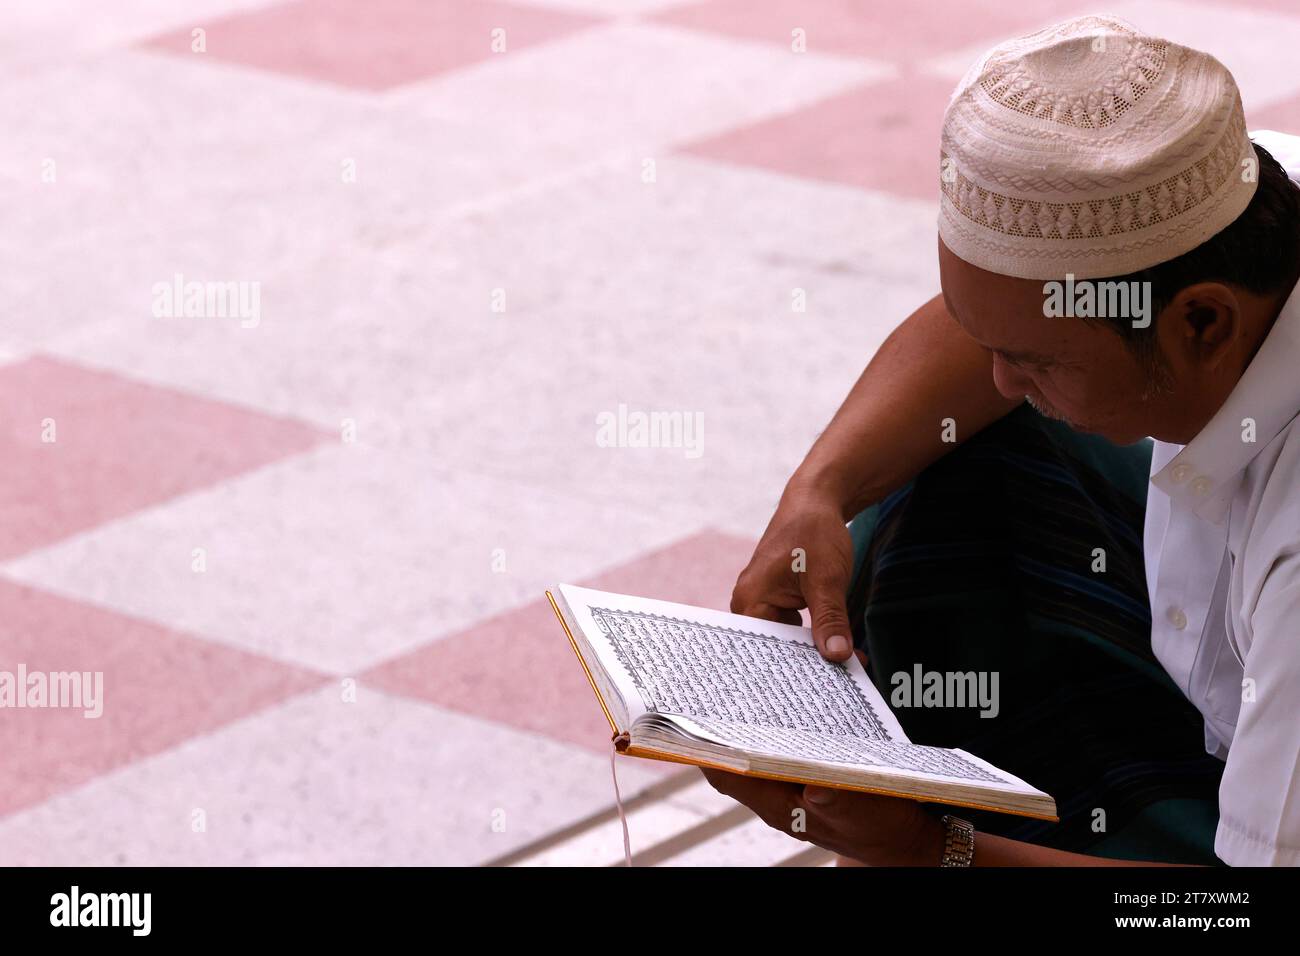 Uomo musulmano che legge un Corano, ho chi Minh City, Vietnam, Indocina, Sud-est asiatico, Asia Foto Stock